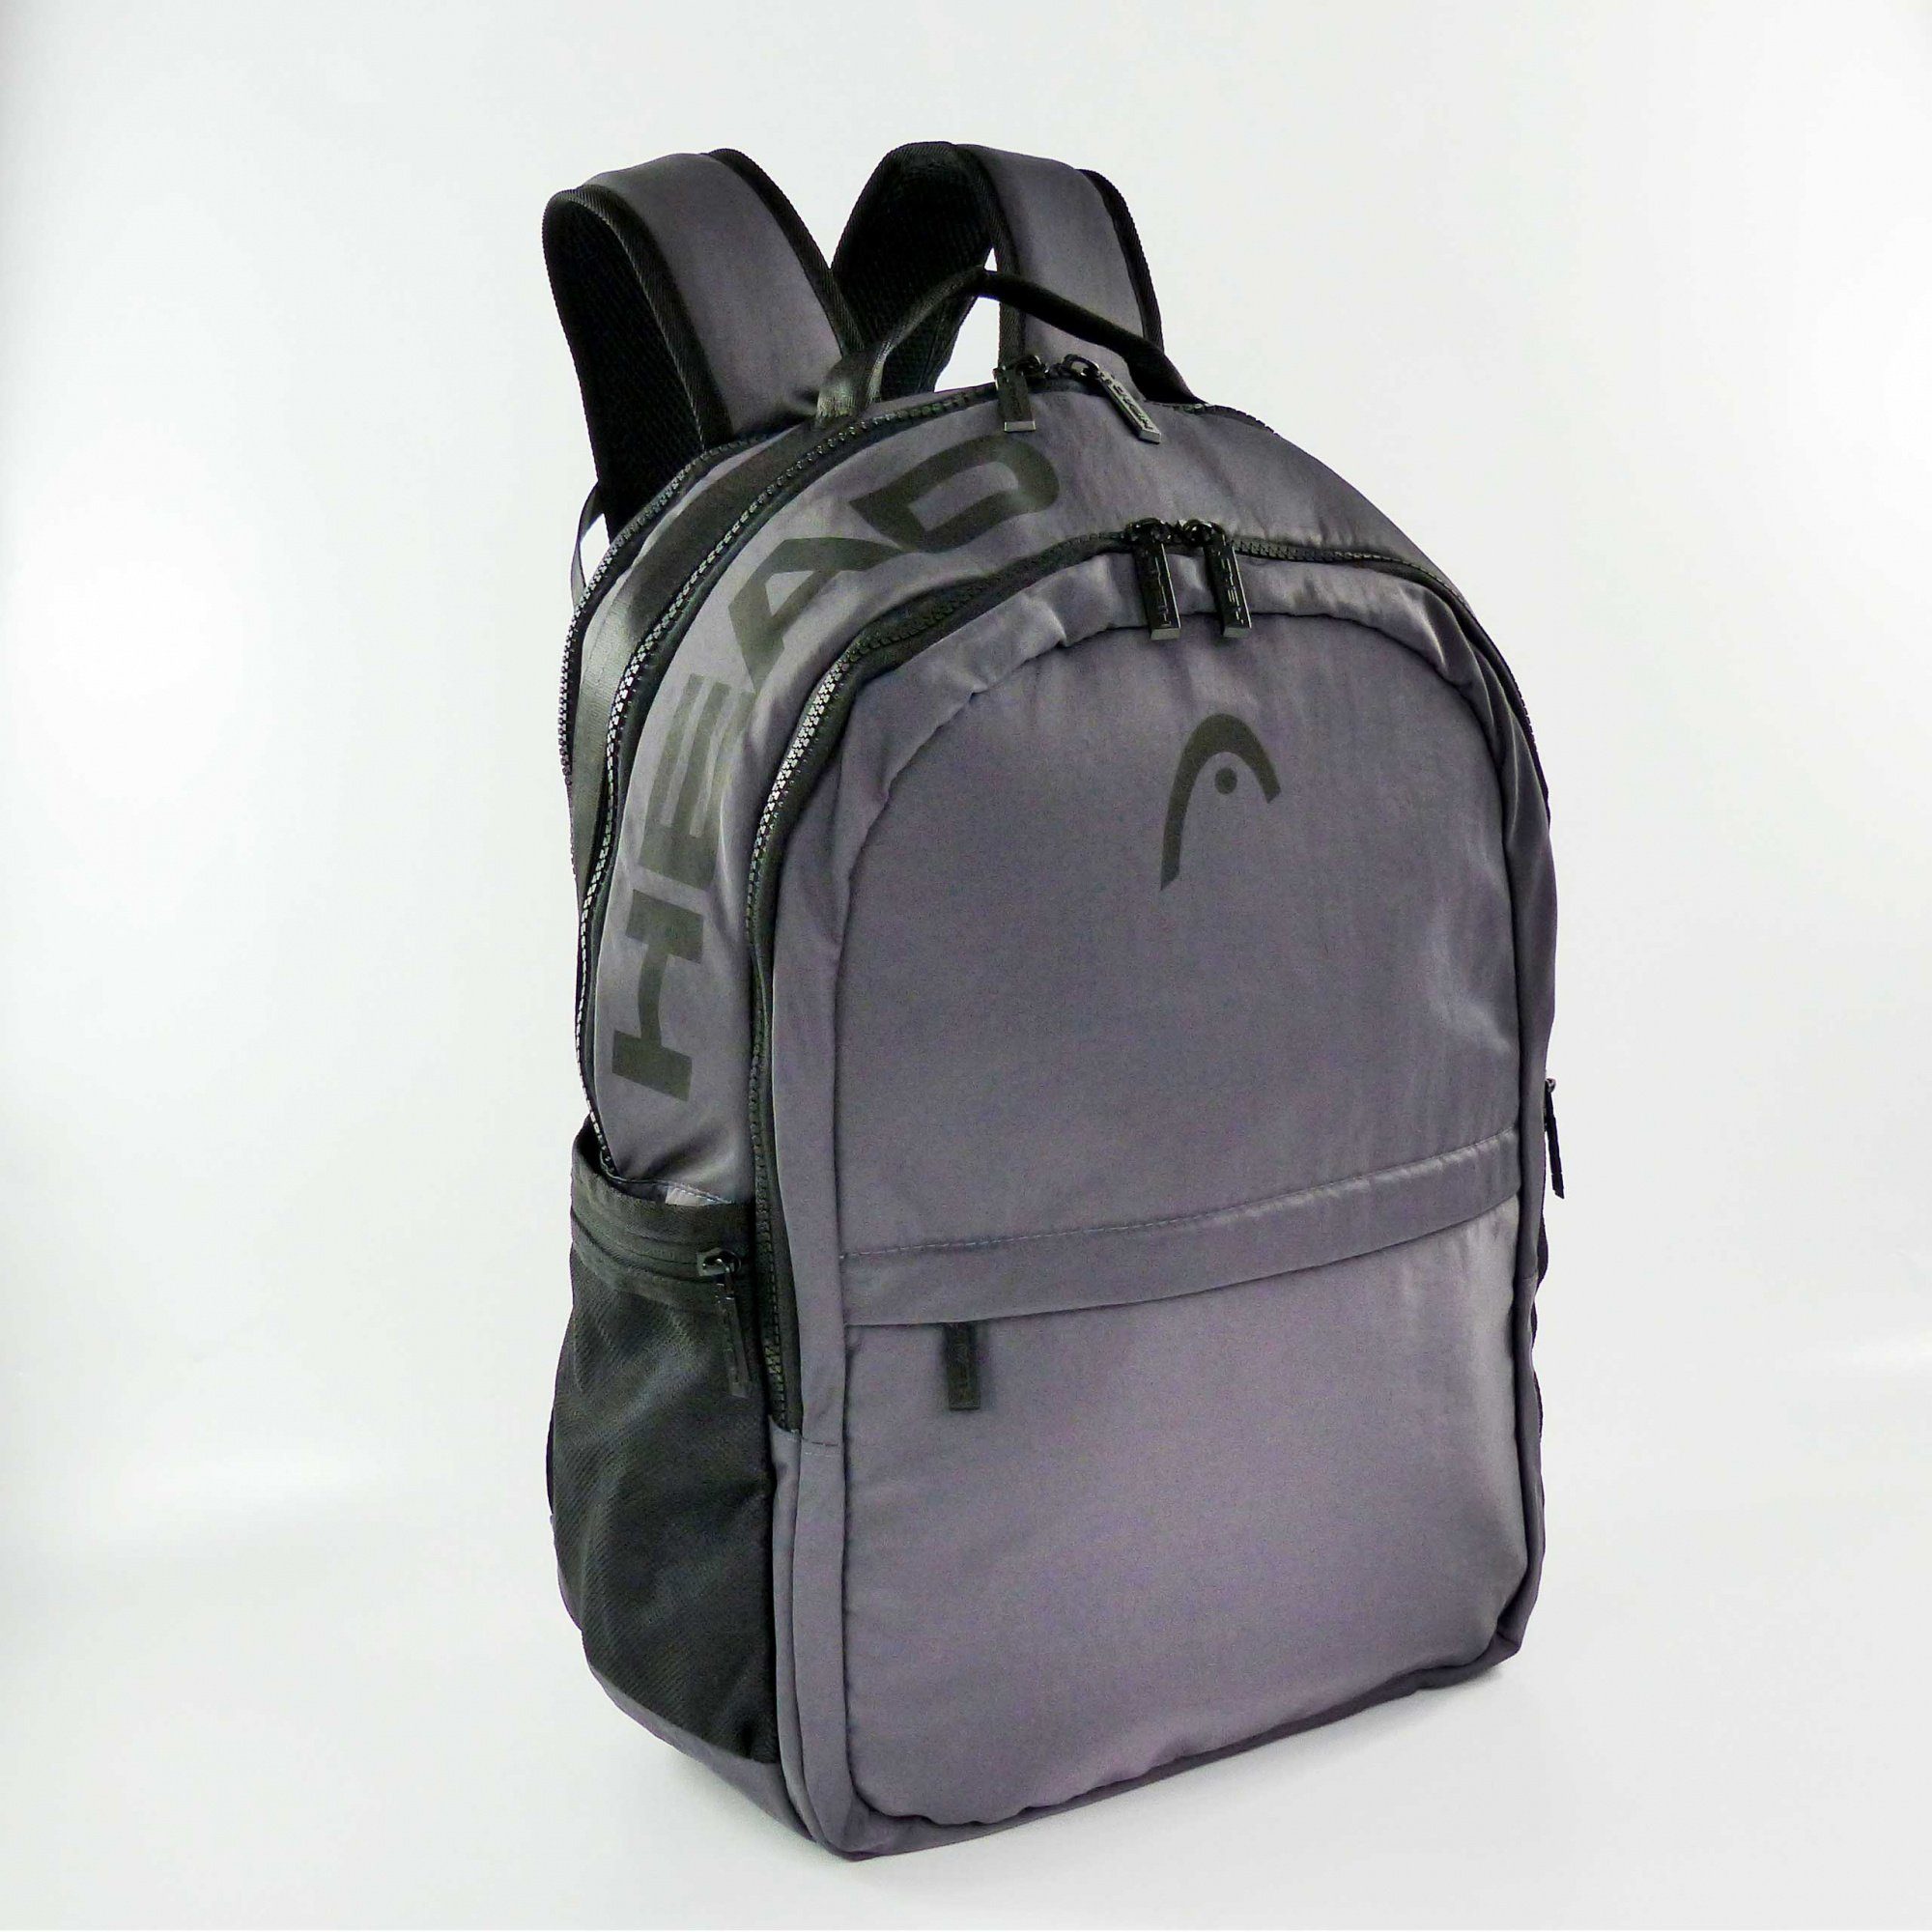 Smash Dunkelgrau 2 Backpack Head Compartments Rucksack